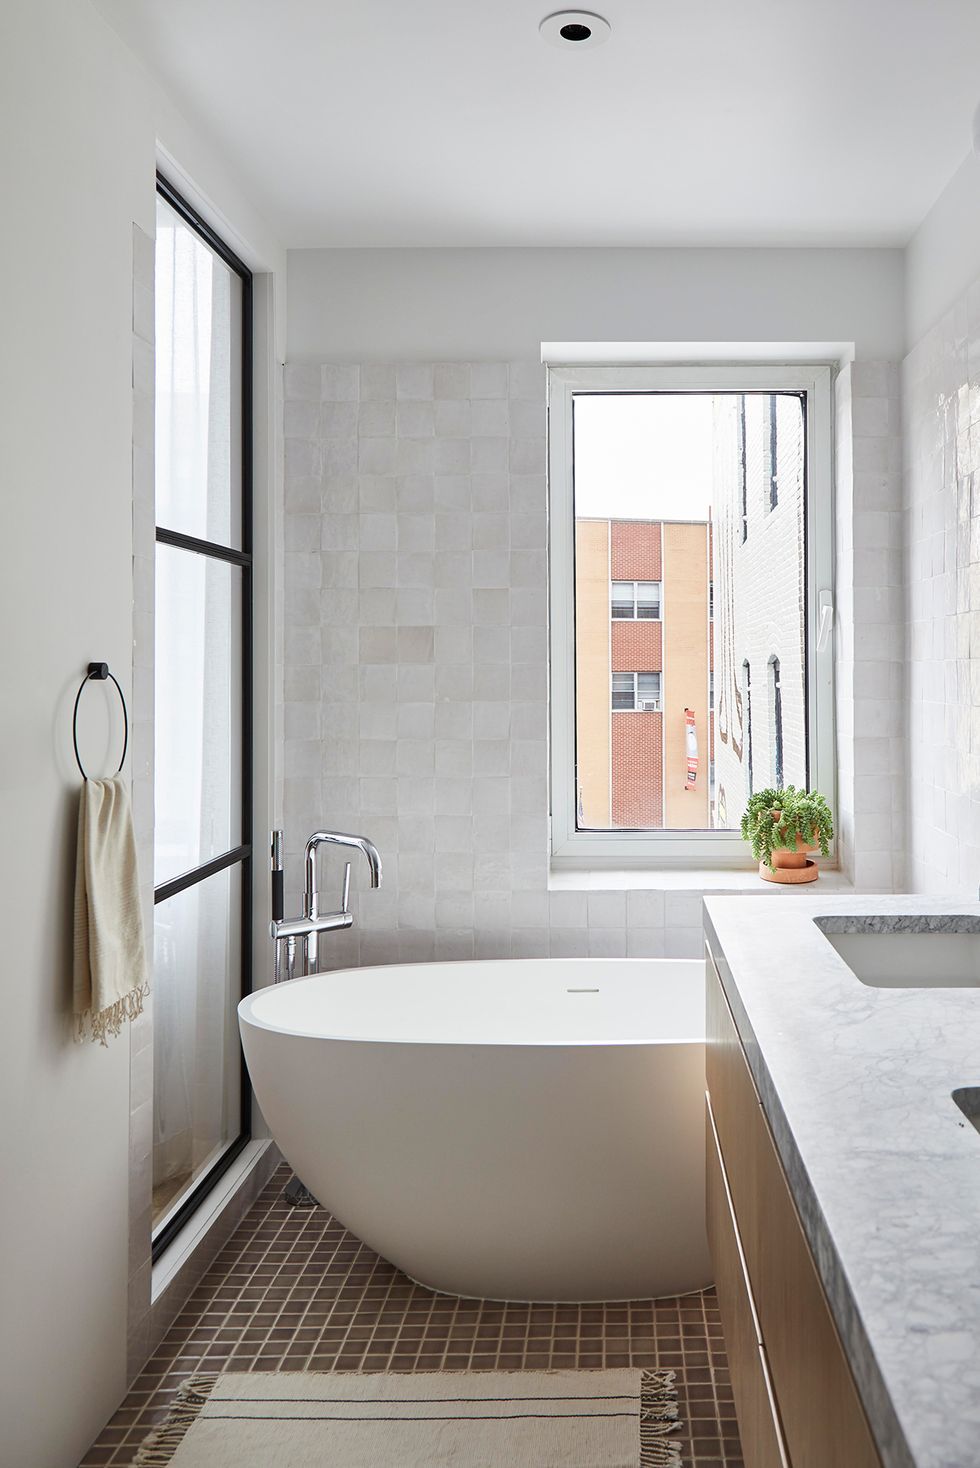 Вместо того, чтобы полностью облицевать плиткой все стены ванной комнаты (или стены по всей высоте во влажных частях комнаты, к примеру, в области душа), попробуйте положить плитку в полвысоты стены